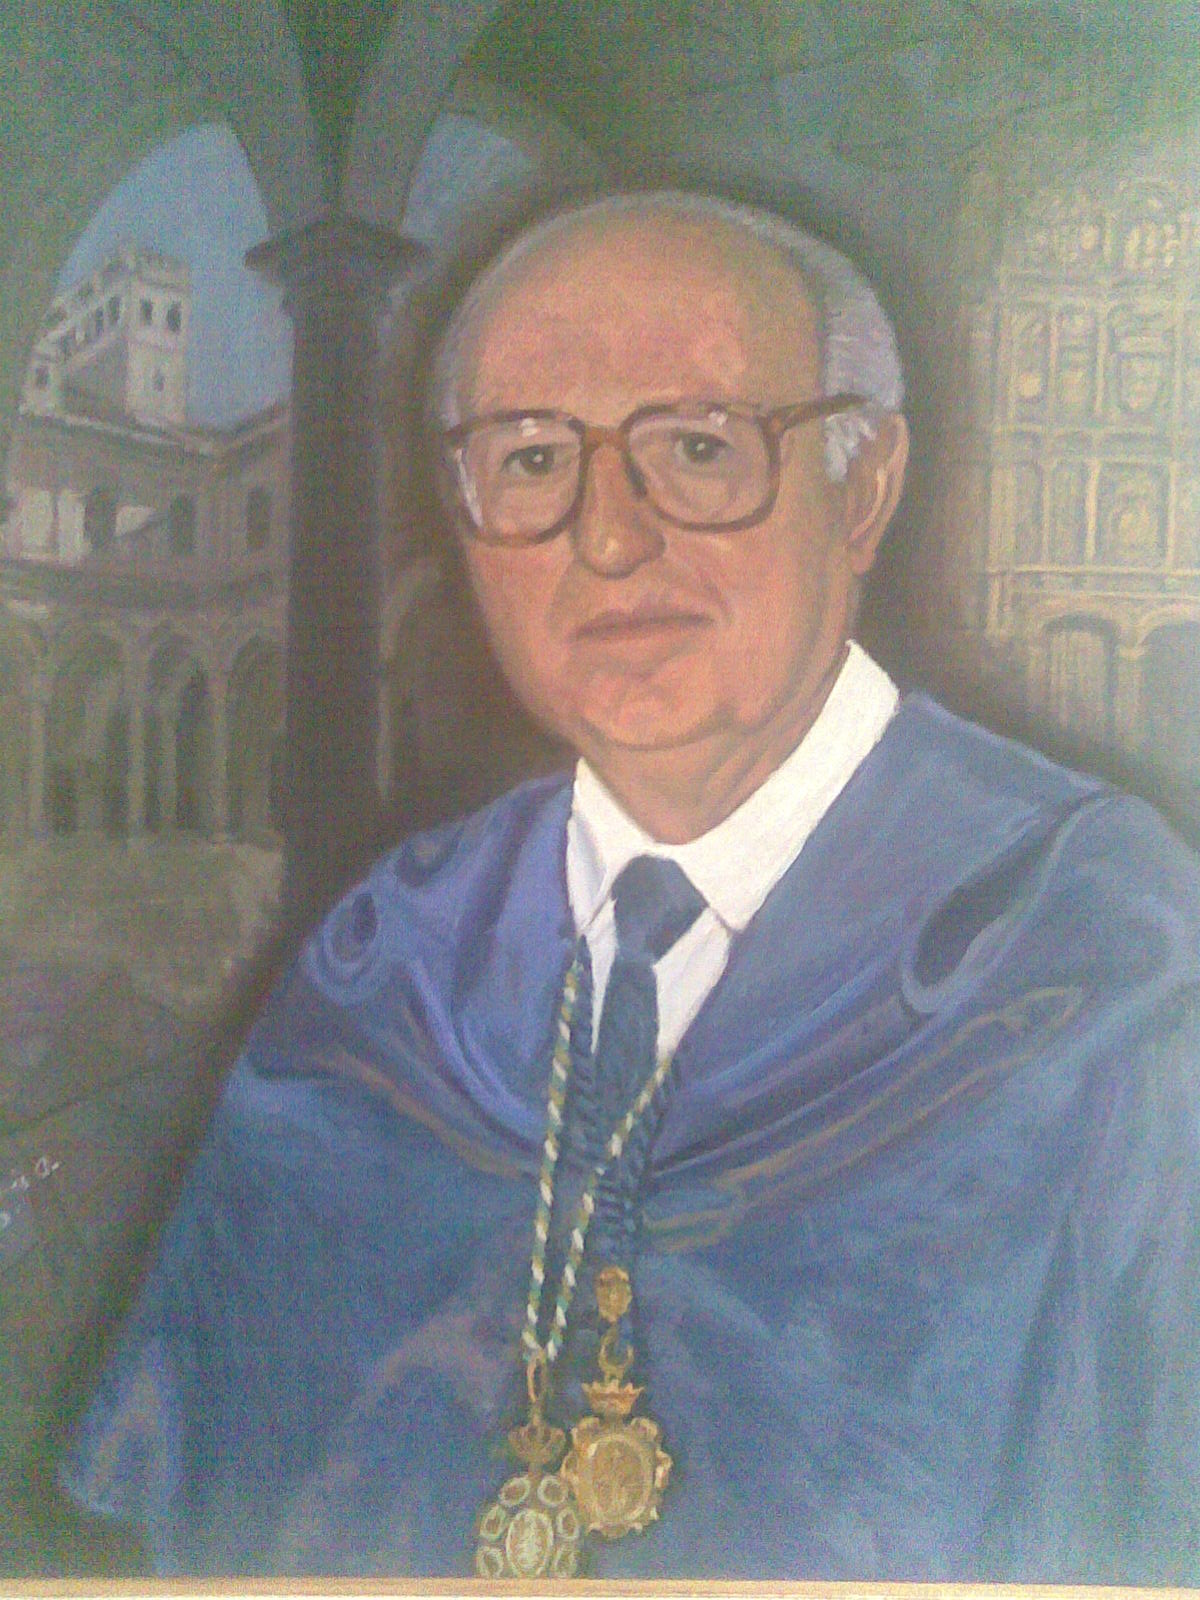 Excmo. Sr. D. Luis Esteban Carrasco, Presidente  
y Académico Fundador de la Academia de Ciencias Matemáticas, Físico-Químicas y Naturales de Granada.